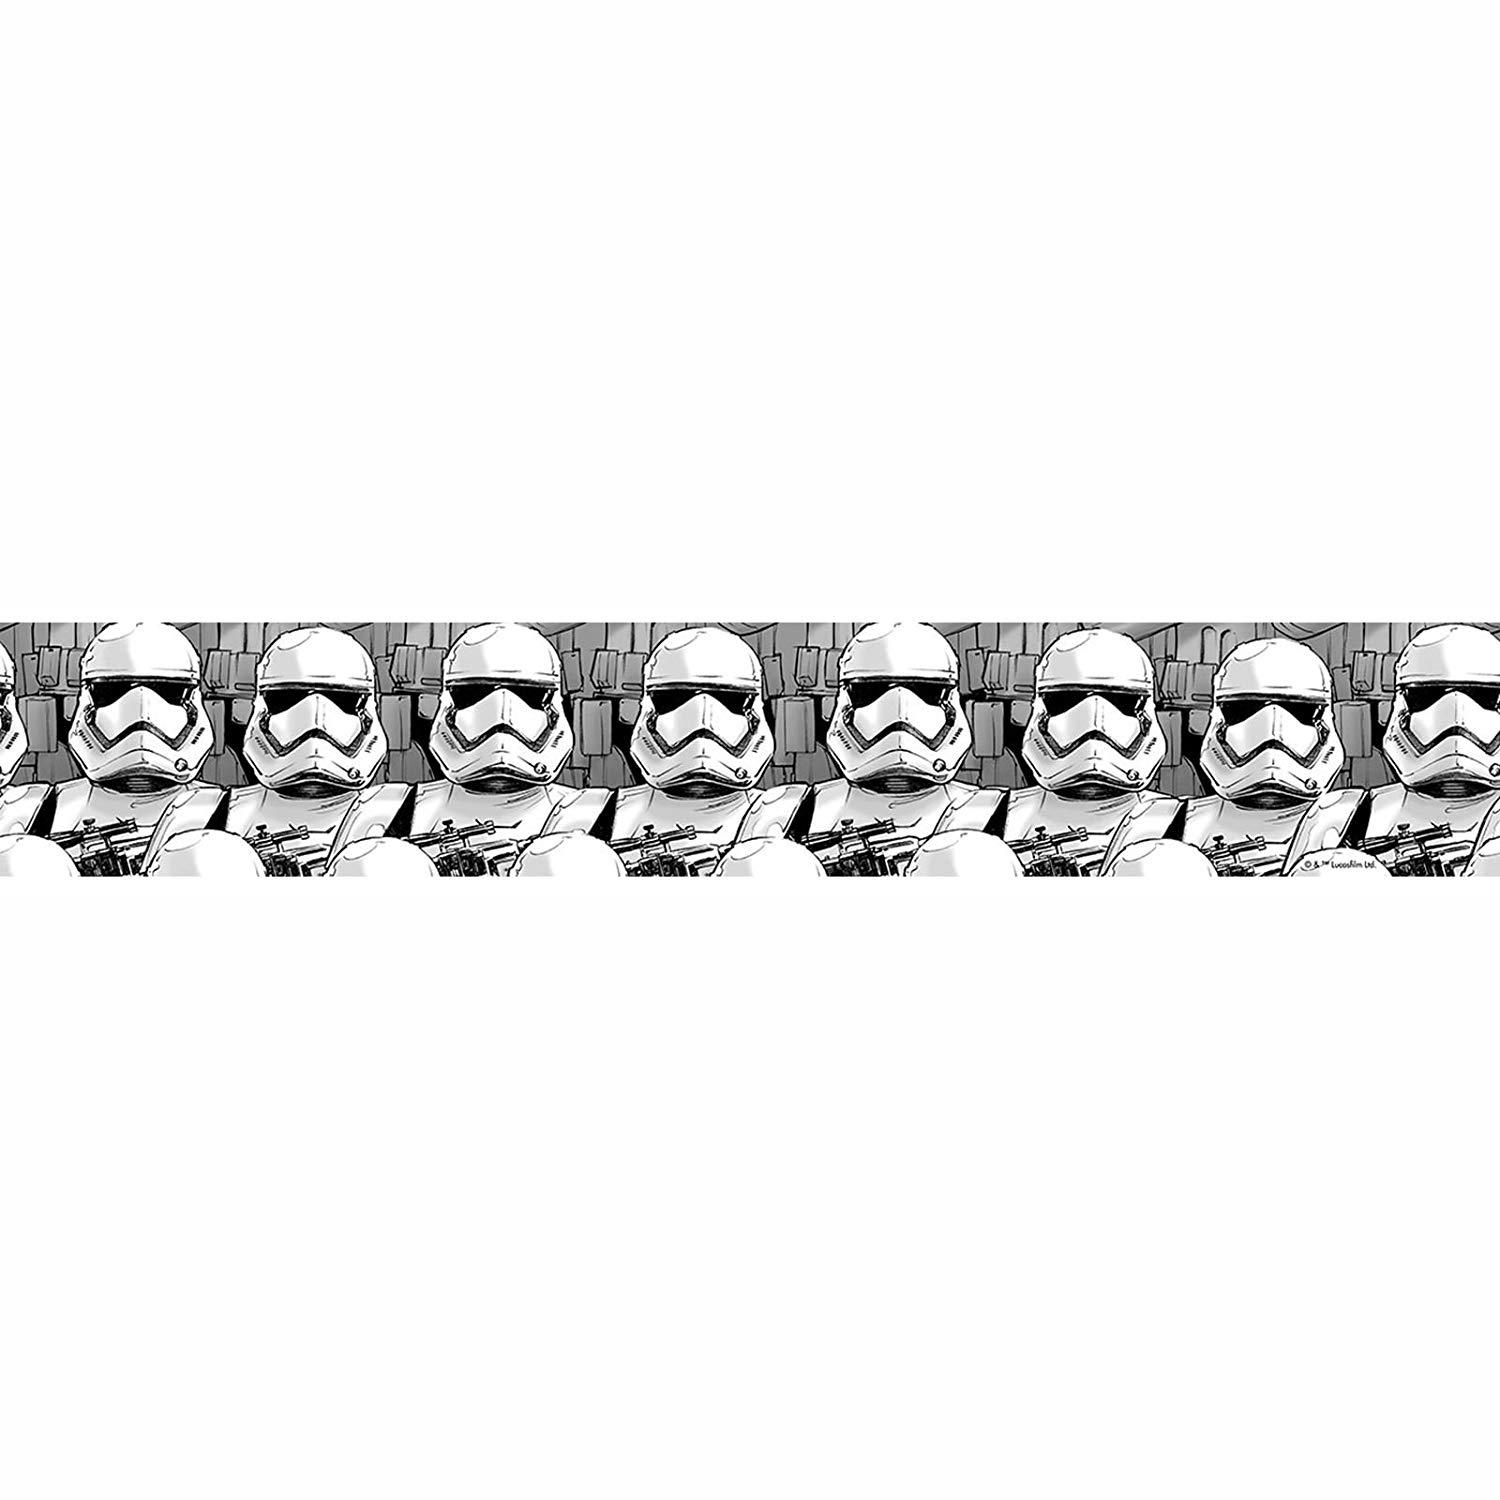 Storm Trooper Border - HD Wallpaper 